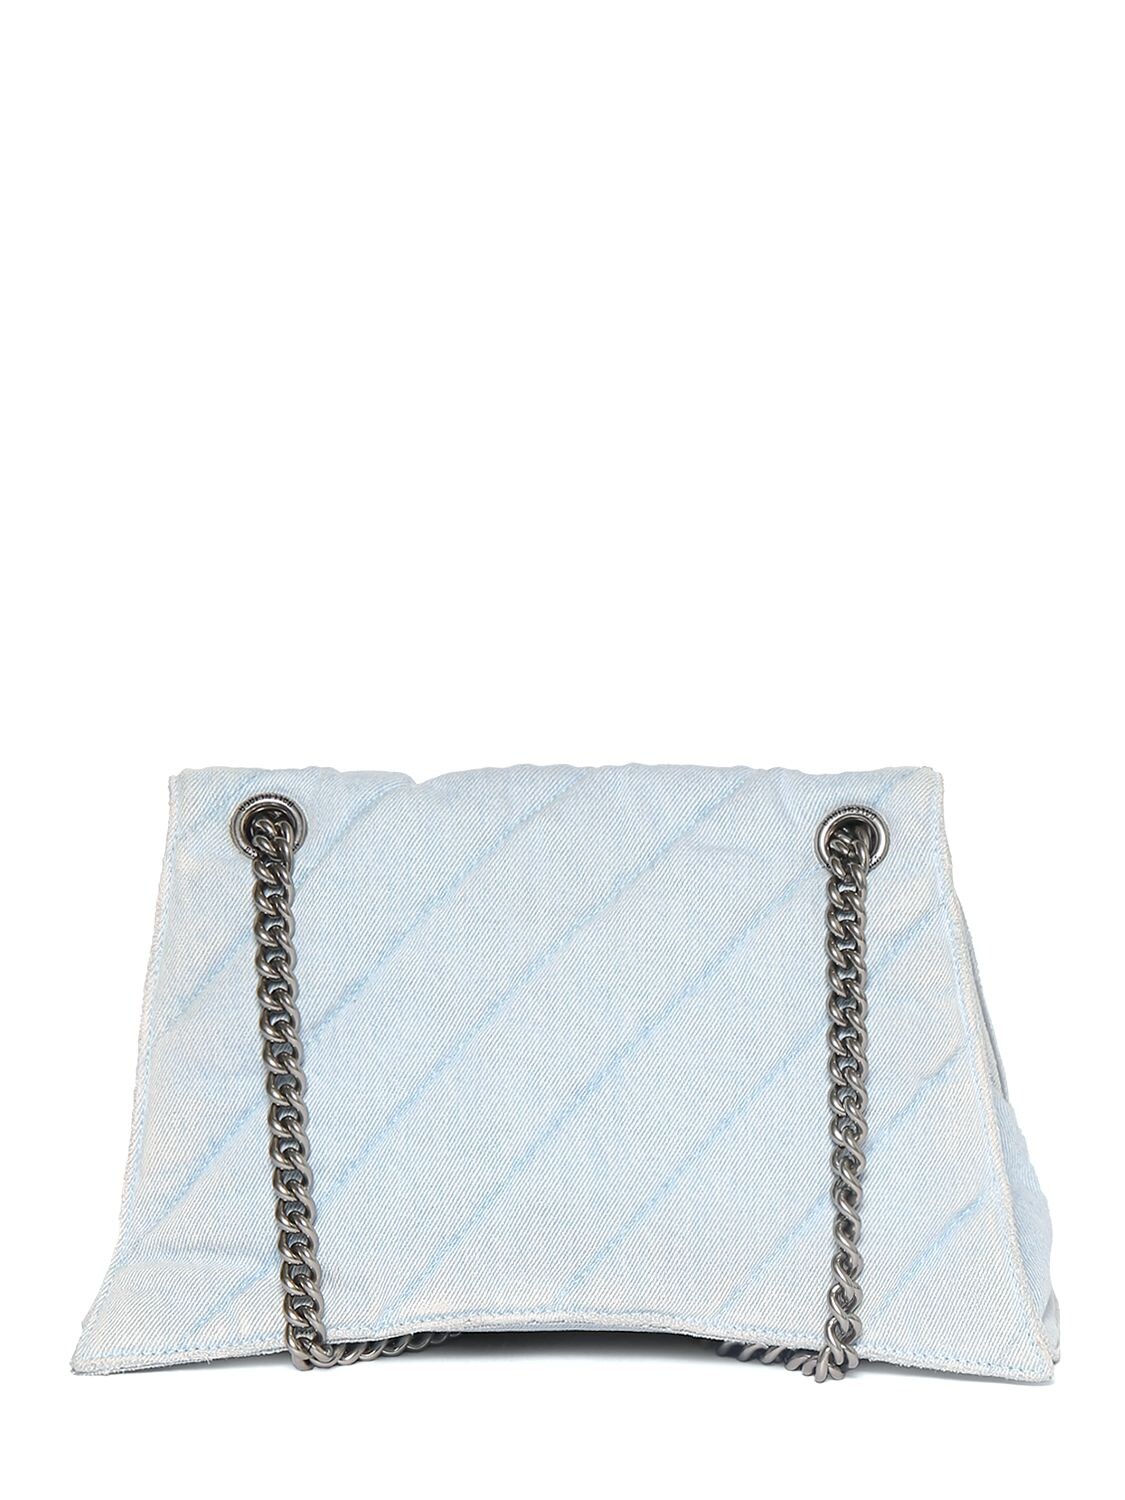 Shop Balenciaga Medium Crush Quilted Cotton Chain Bag In Light Blue